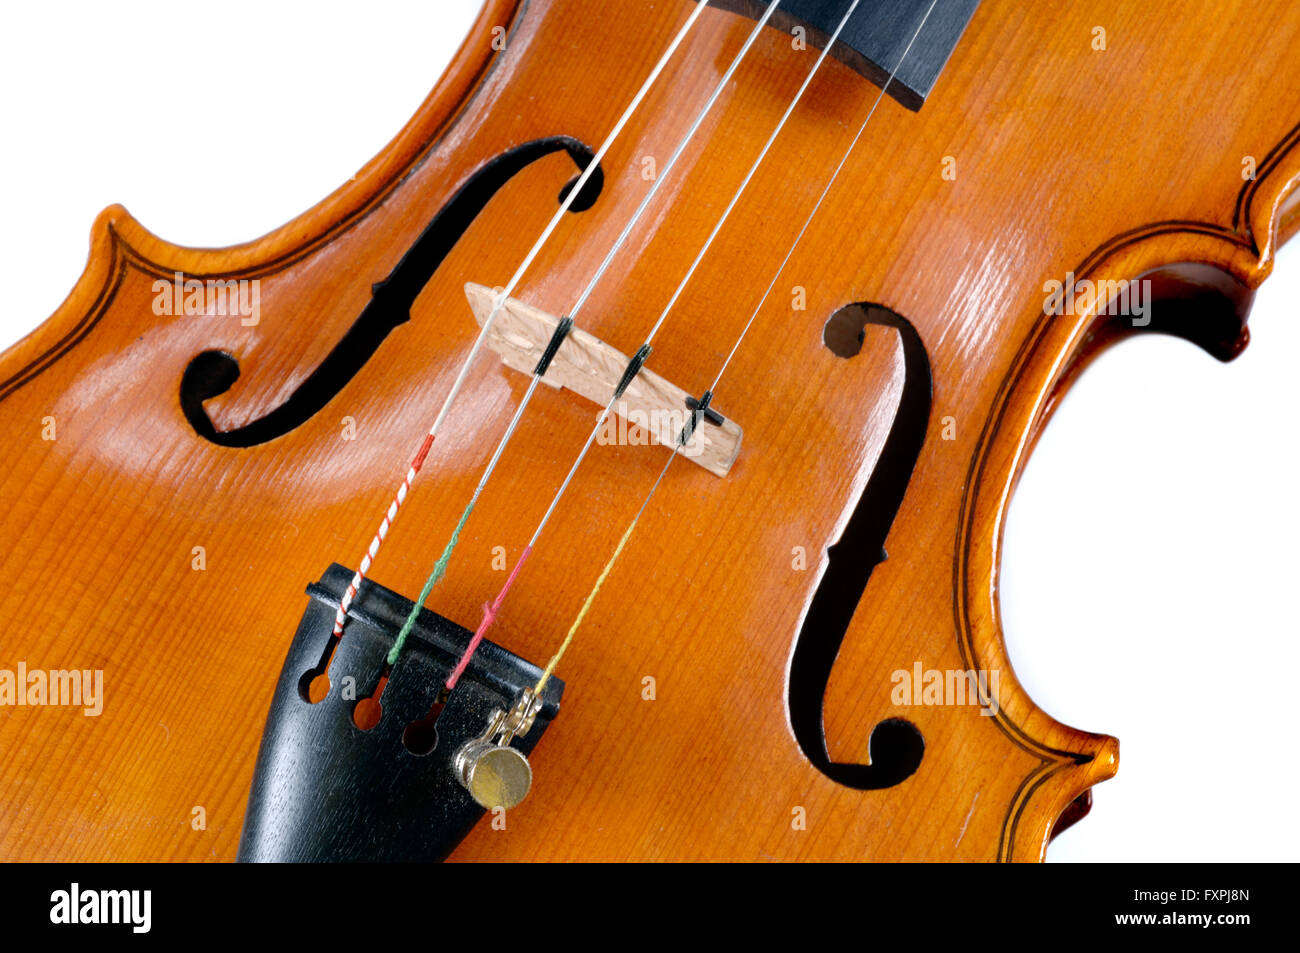 Dettaglio del violino come strumento musicale della orchestra Foto stock -  Alamy